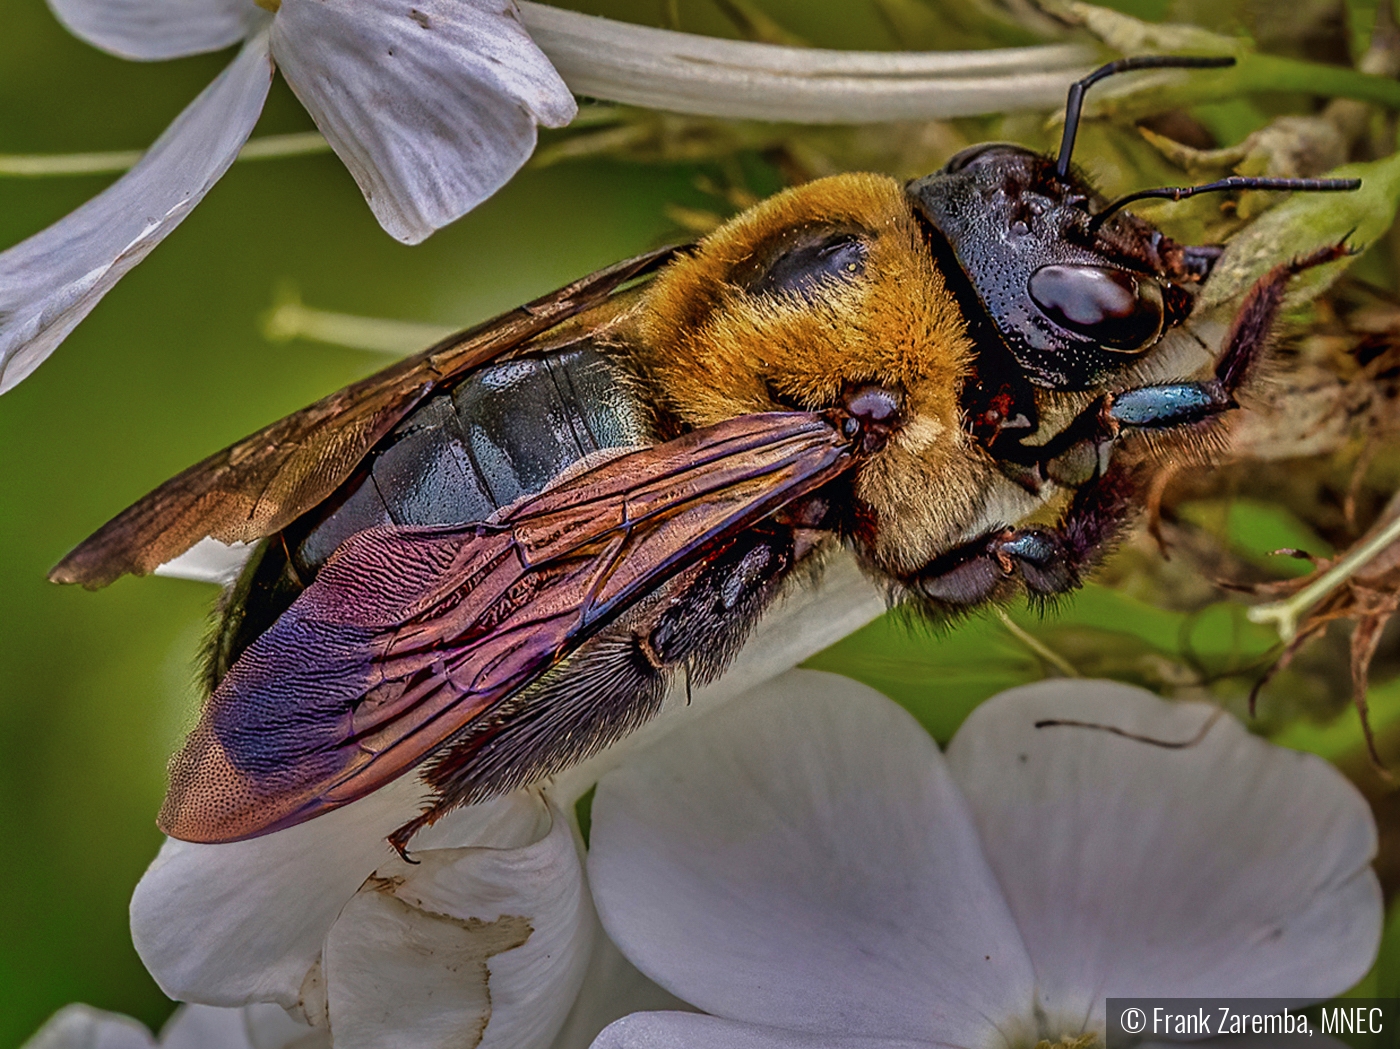 The Pollinator by Frank Zaremba, MNEC